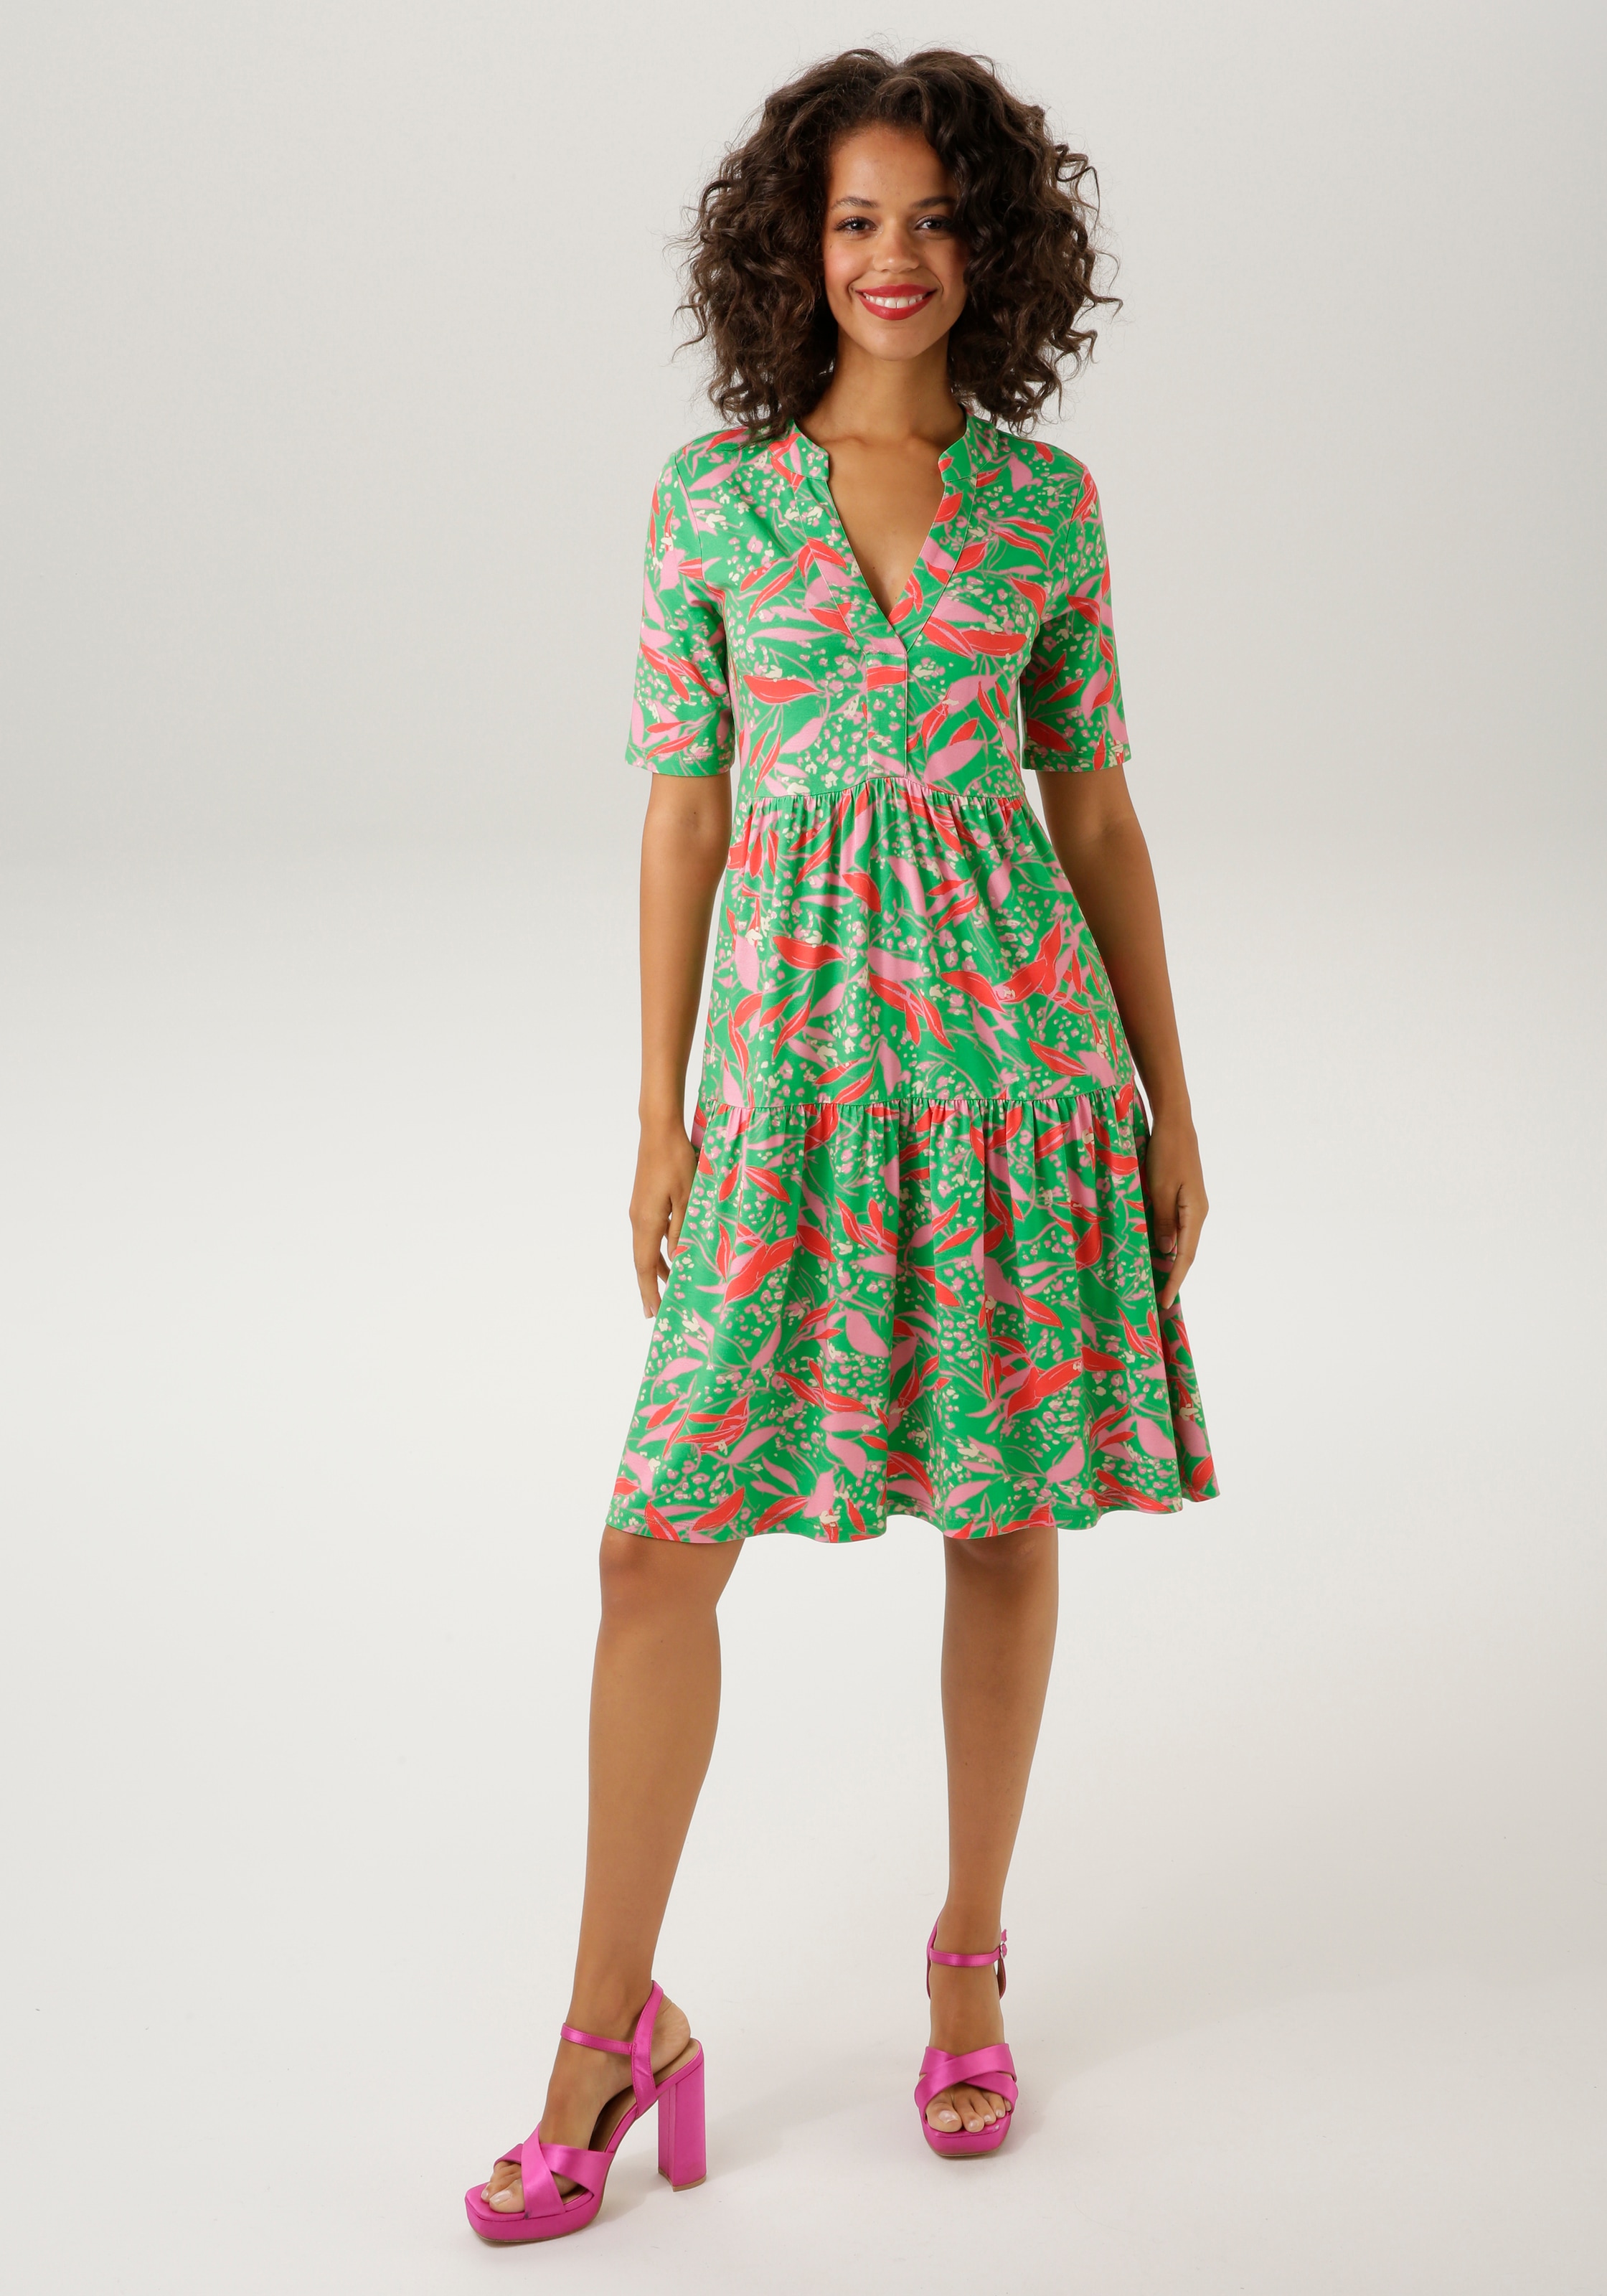 NEUE CASUAL Sommerkleid, bei graphischem KOLLEKTION mit OTTOversand trendfarbenem, Blumendruck Aniston -